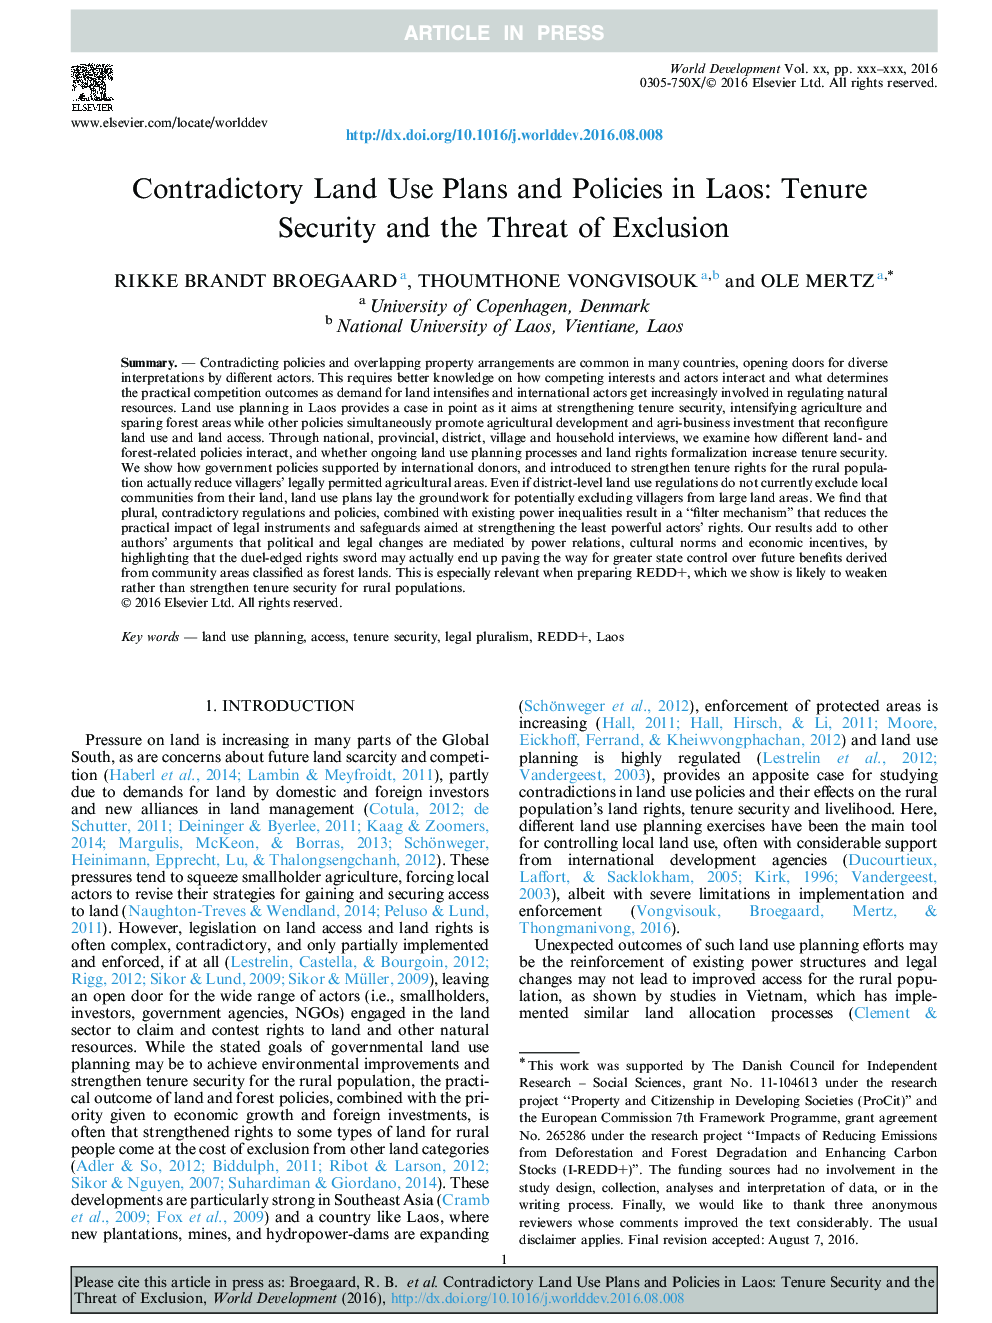 برنامه های همکاری و برنامه های کاربردی زمین در لائوس: امنیت حراست و خطر محرومیت 